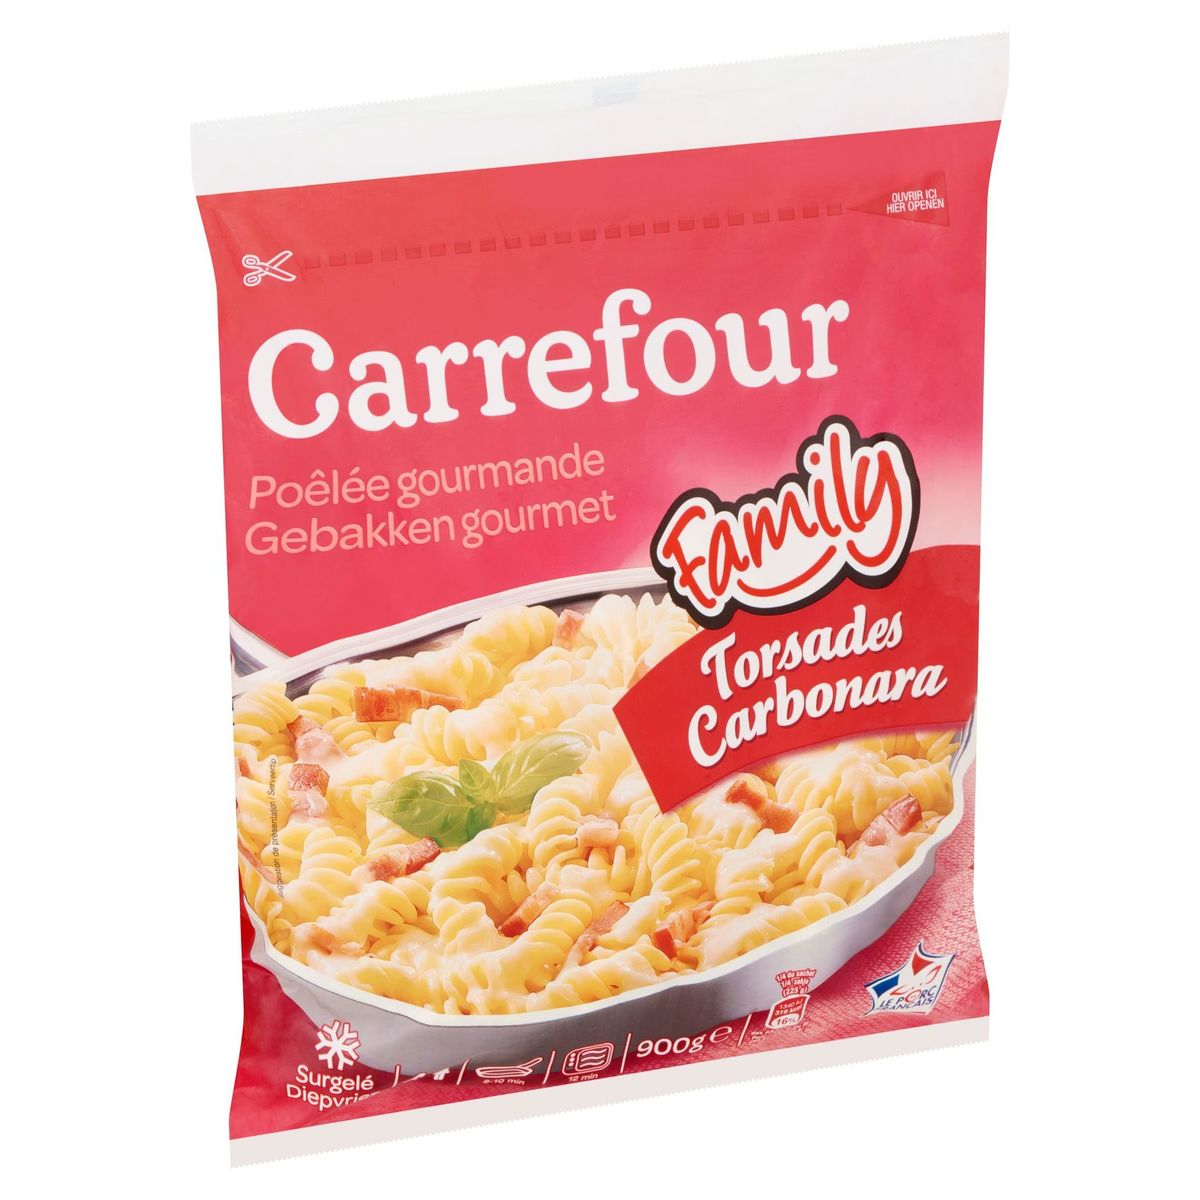 Carrefour Family Poêlée Gourmande Torsades Carbonara 900 g